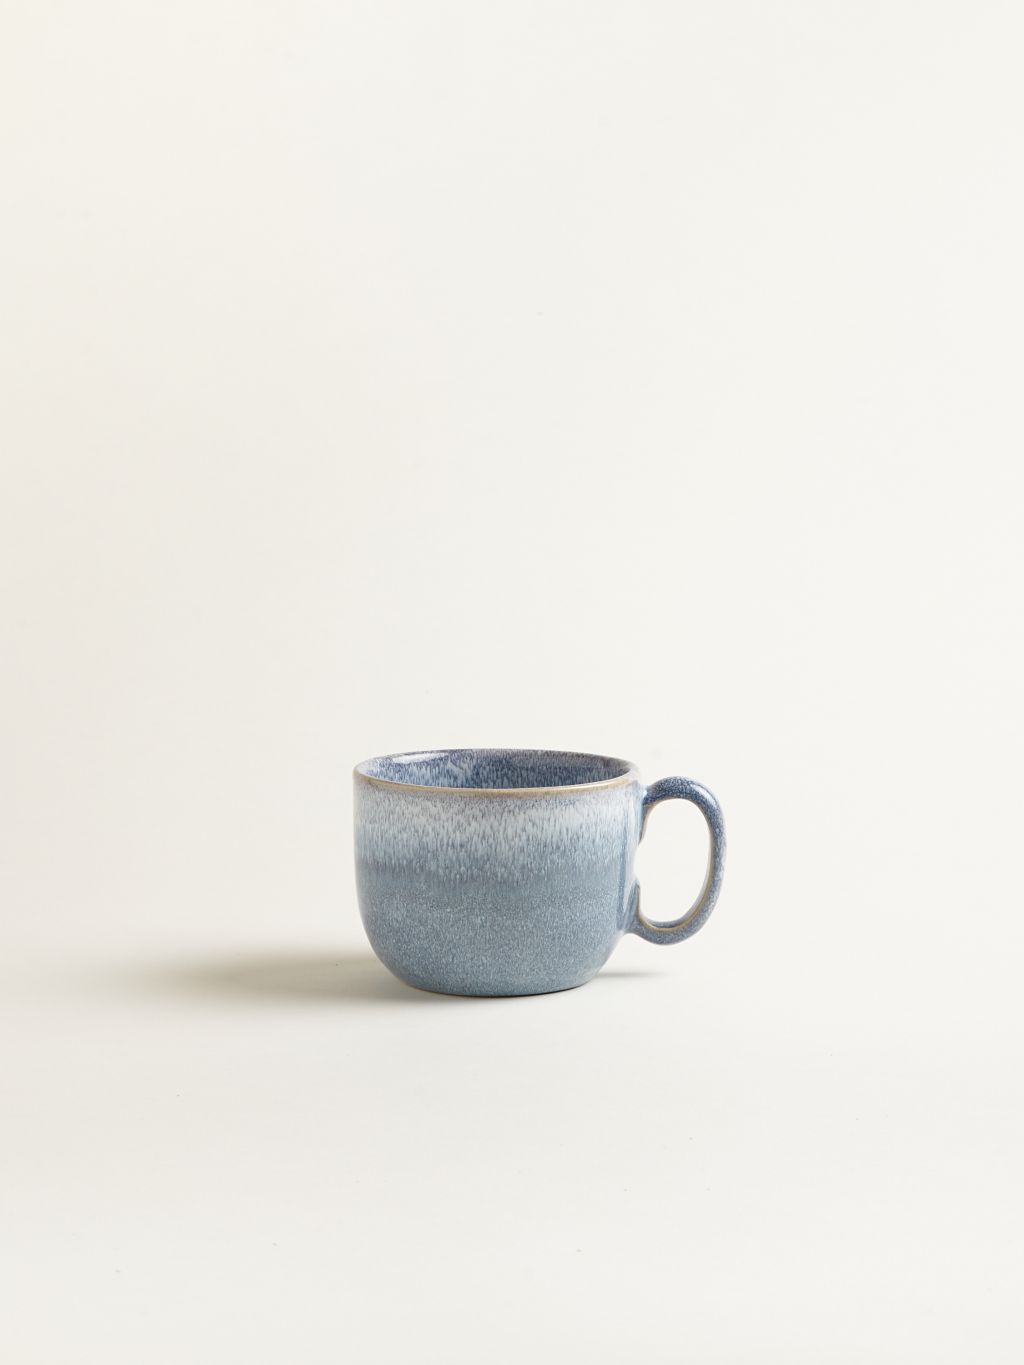 Handgefertigte Große Tasse aus Keramik 450ml graublau